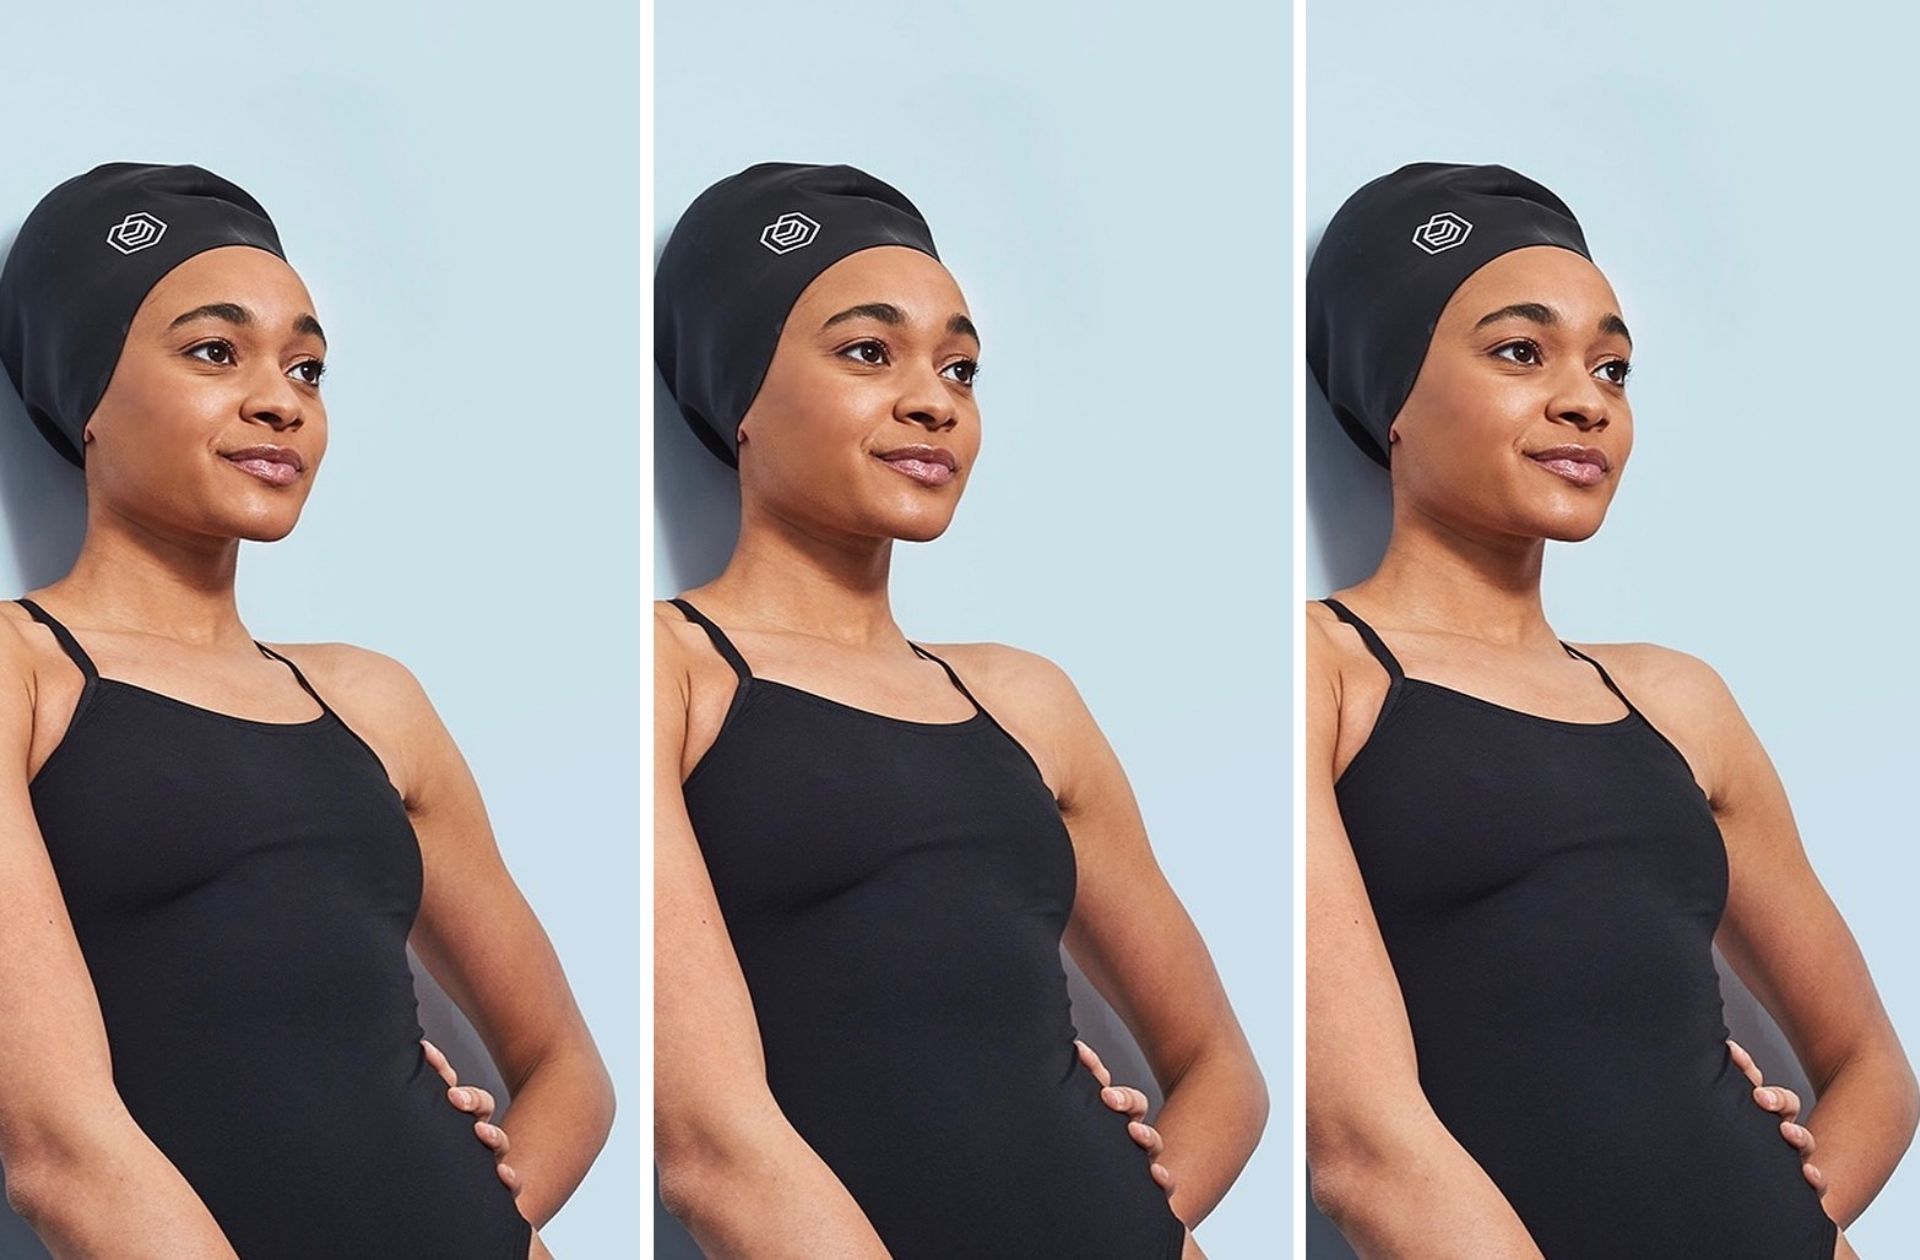 L’interdiction aux JO des bonnets de bain pour cheveux afros va être reconsidérée : la mobilisation, ça marche